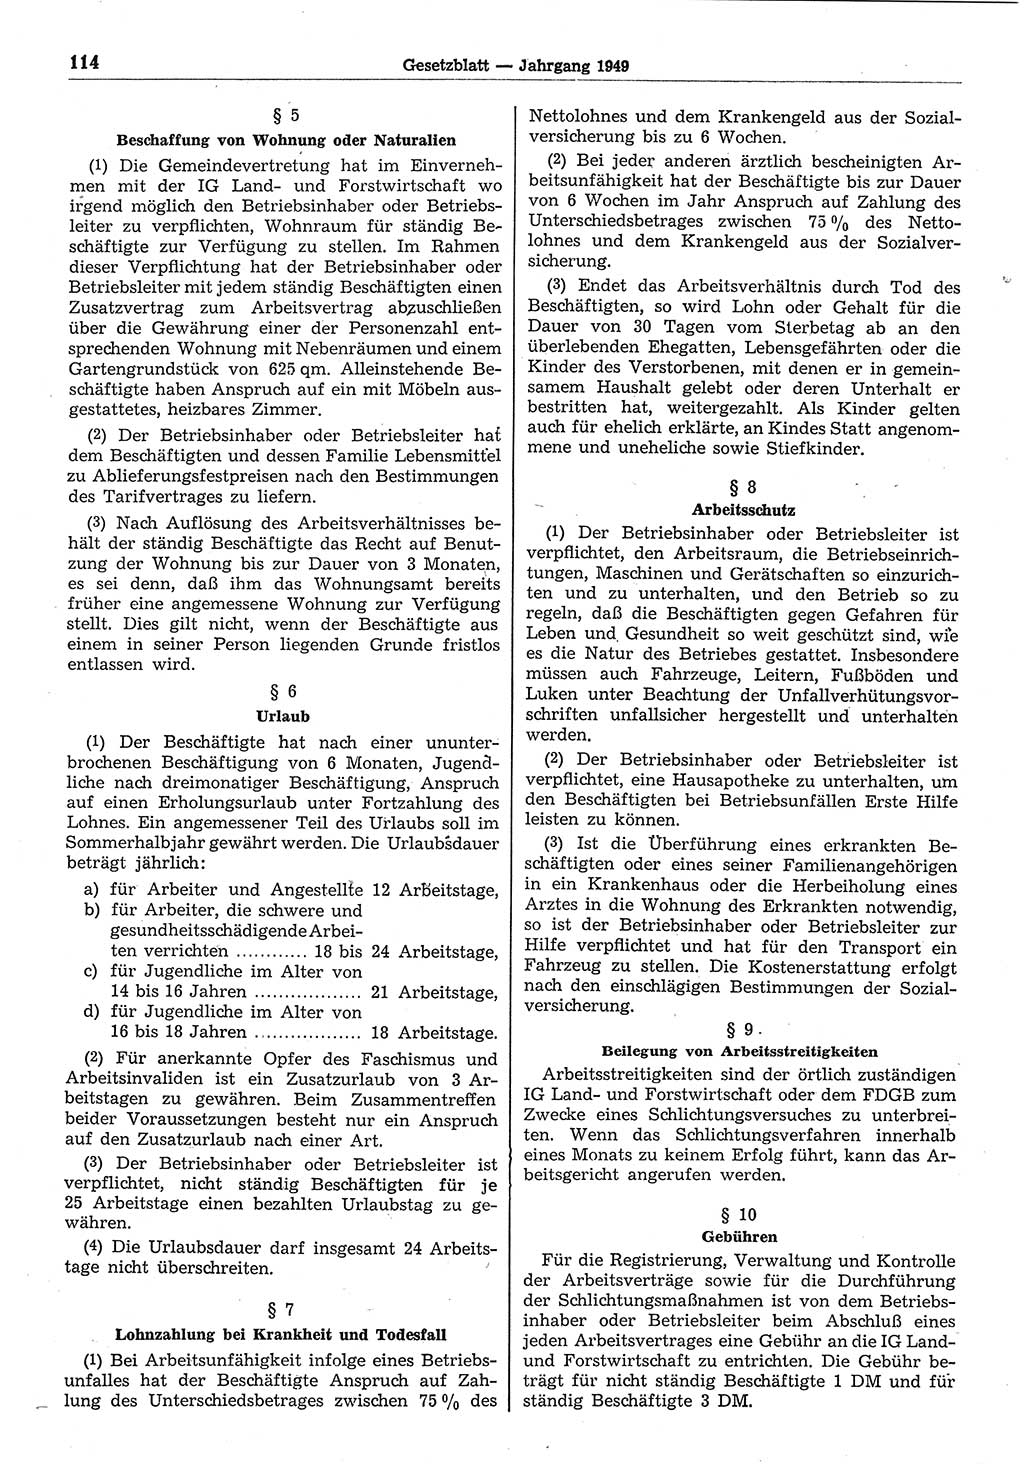 Gesetzblatt (GBl.) der Deutschen Demokratischen Republik (DDR) 1949, Seite 114 (GBl. DDR 1949, S. 114)